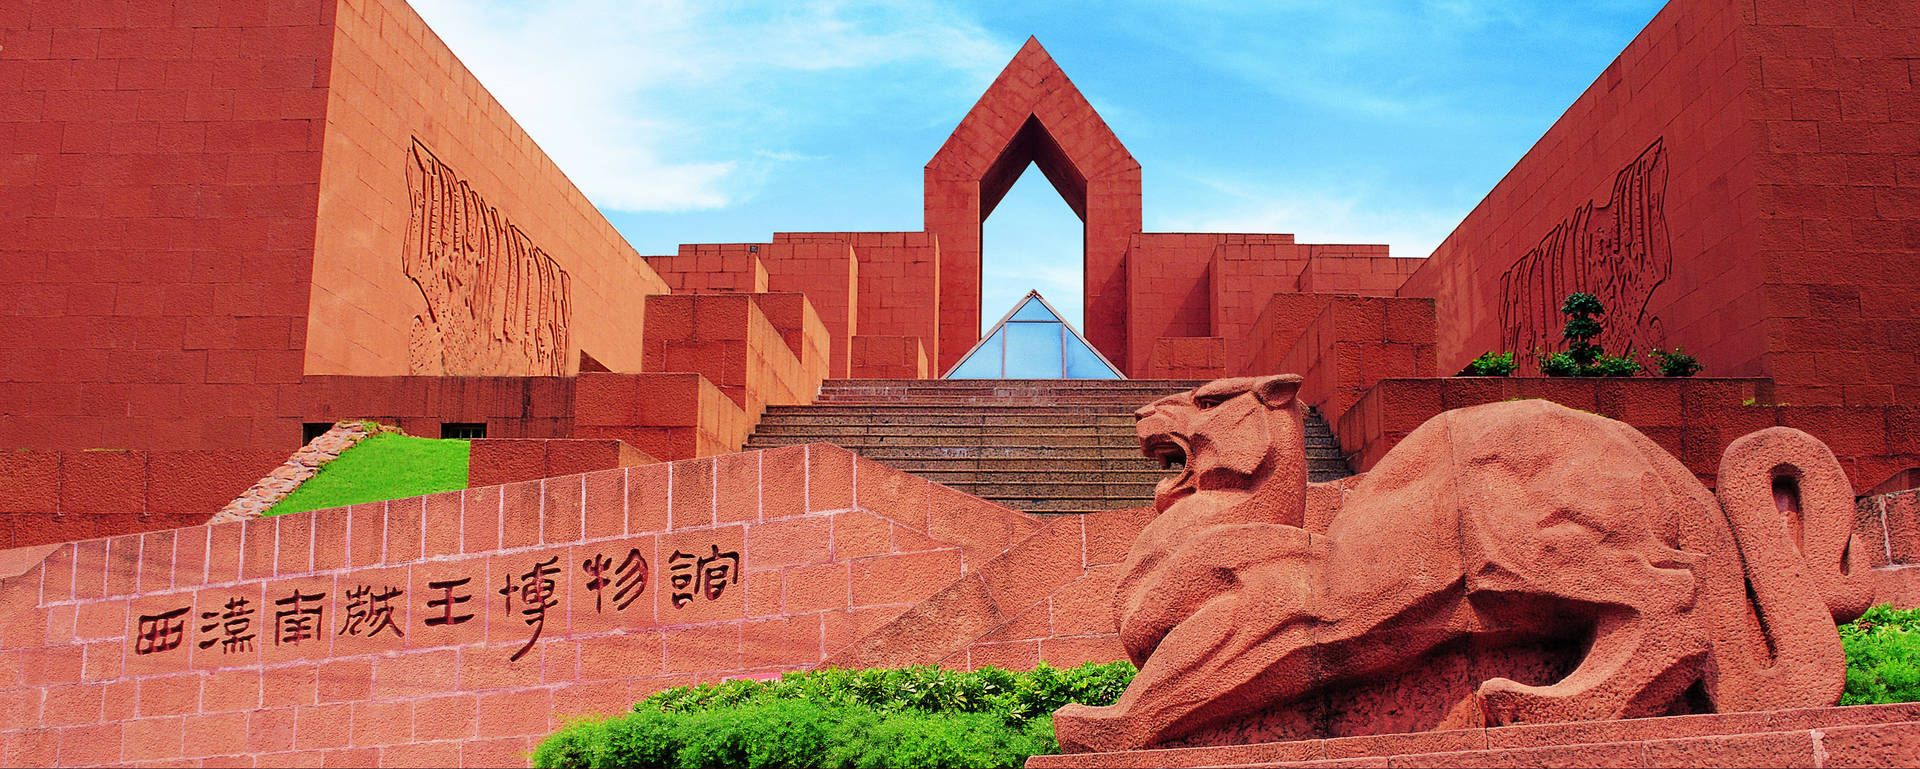 Västra Han-mausoleet I Guangzhou Wallpaper